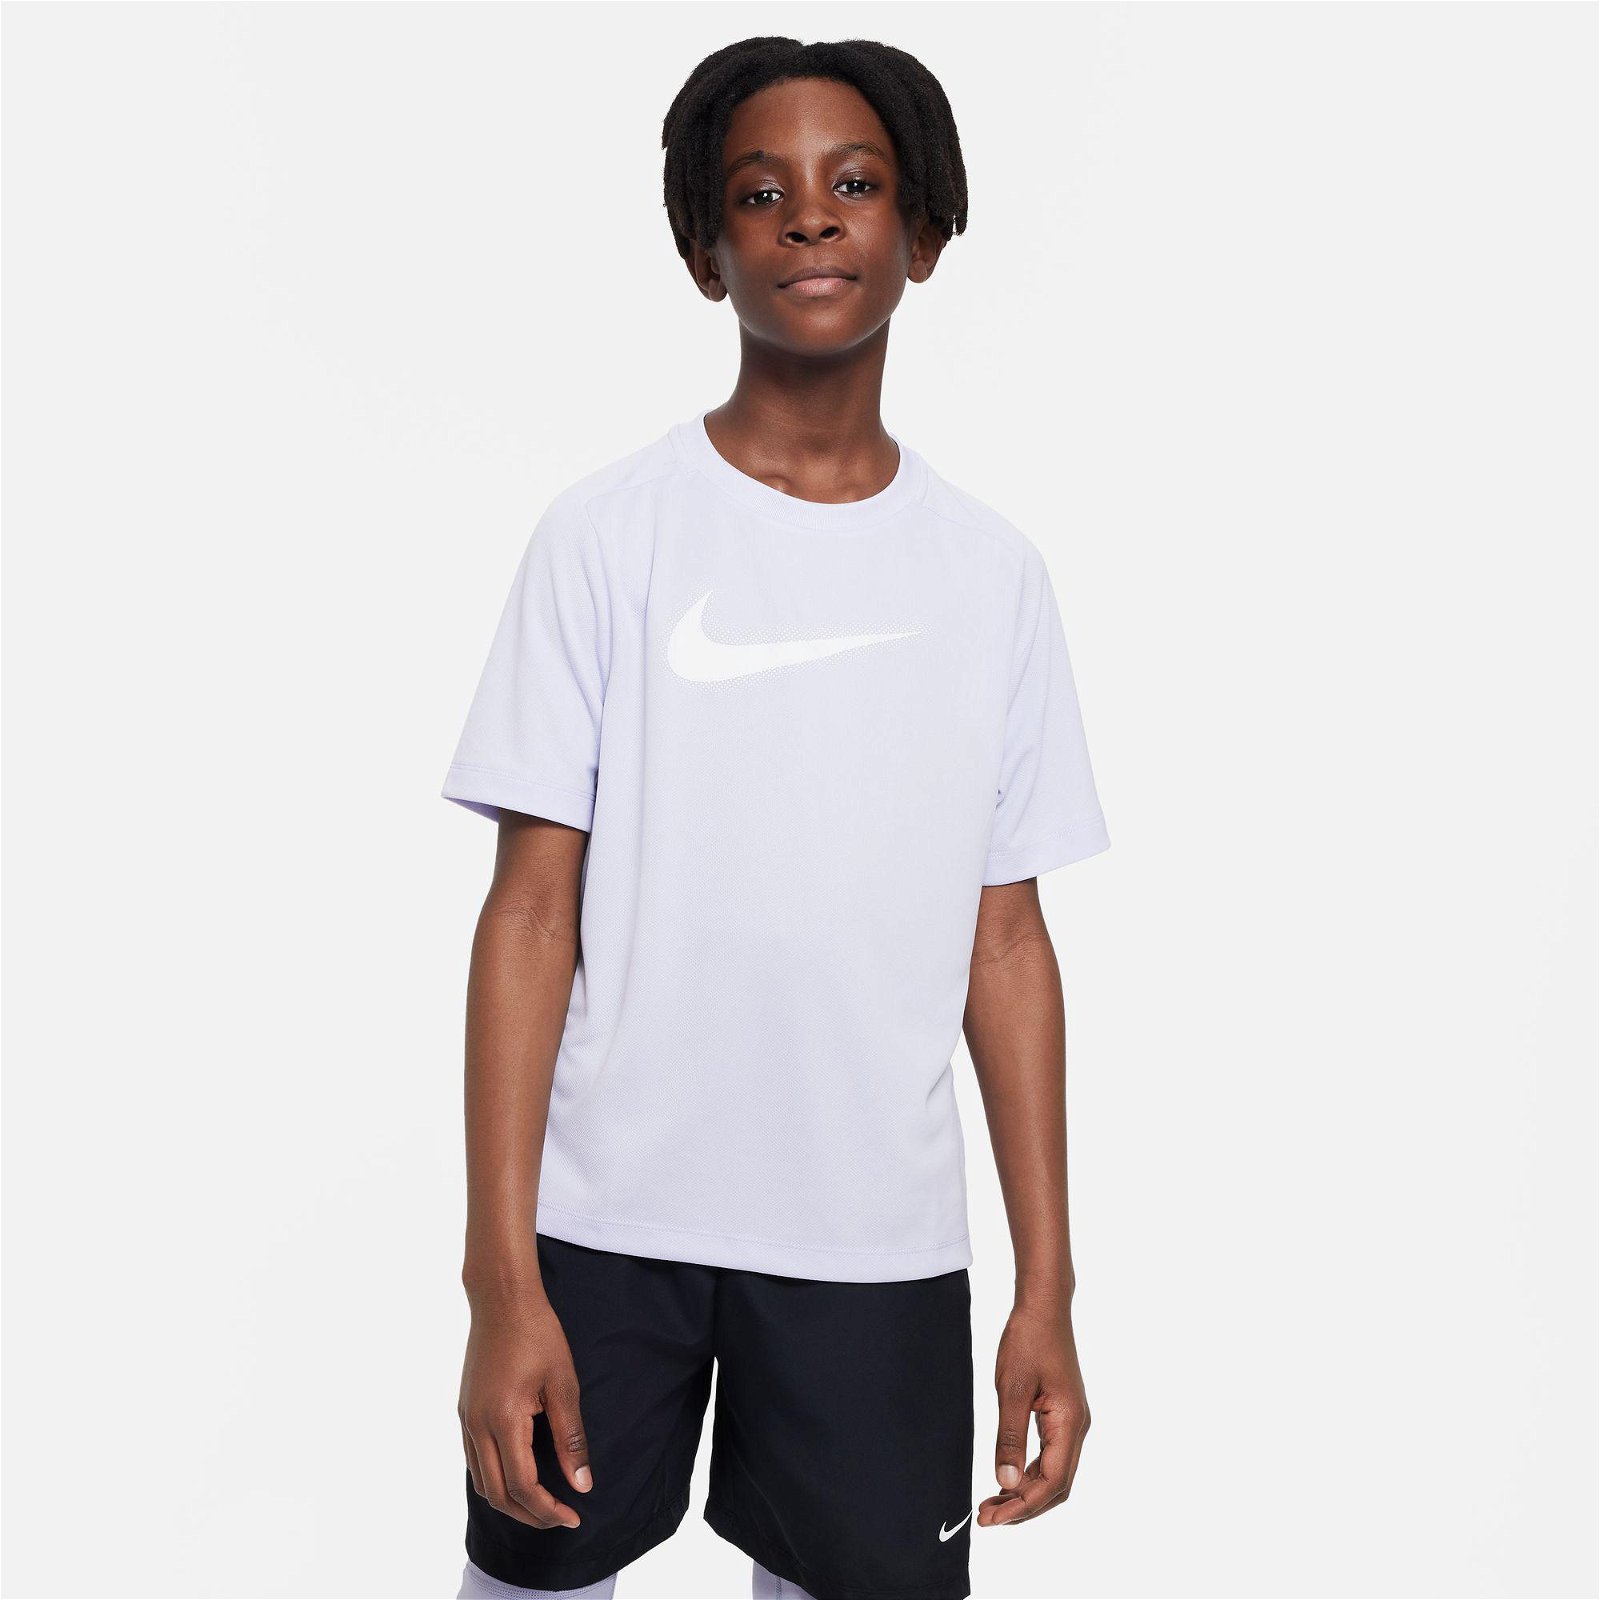 Nike Dri-Fit Multi+ Top Hbr Çocuk Mor T-Shirt